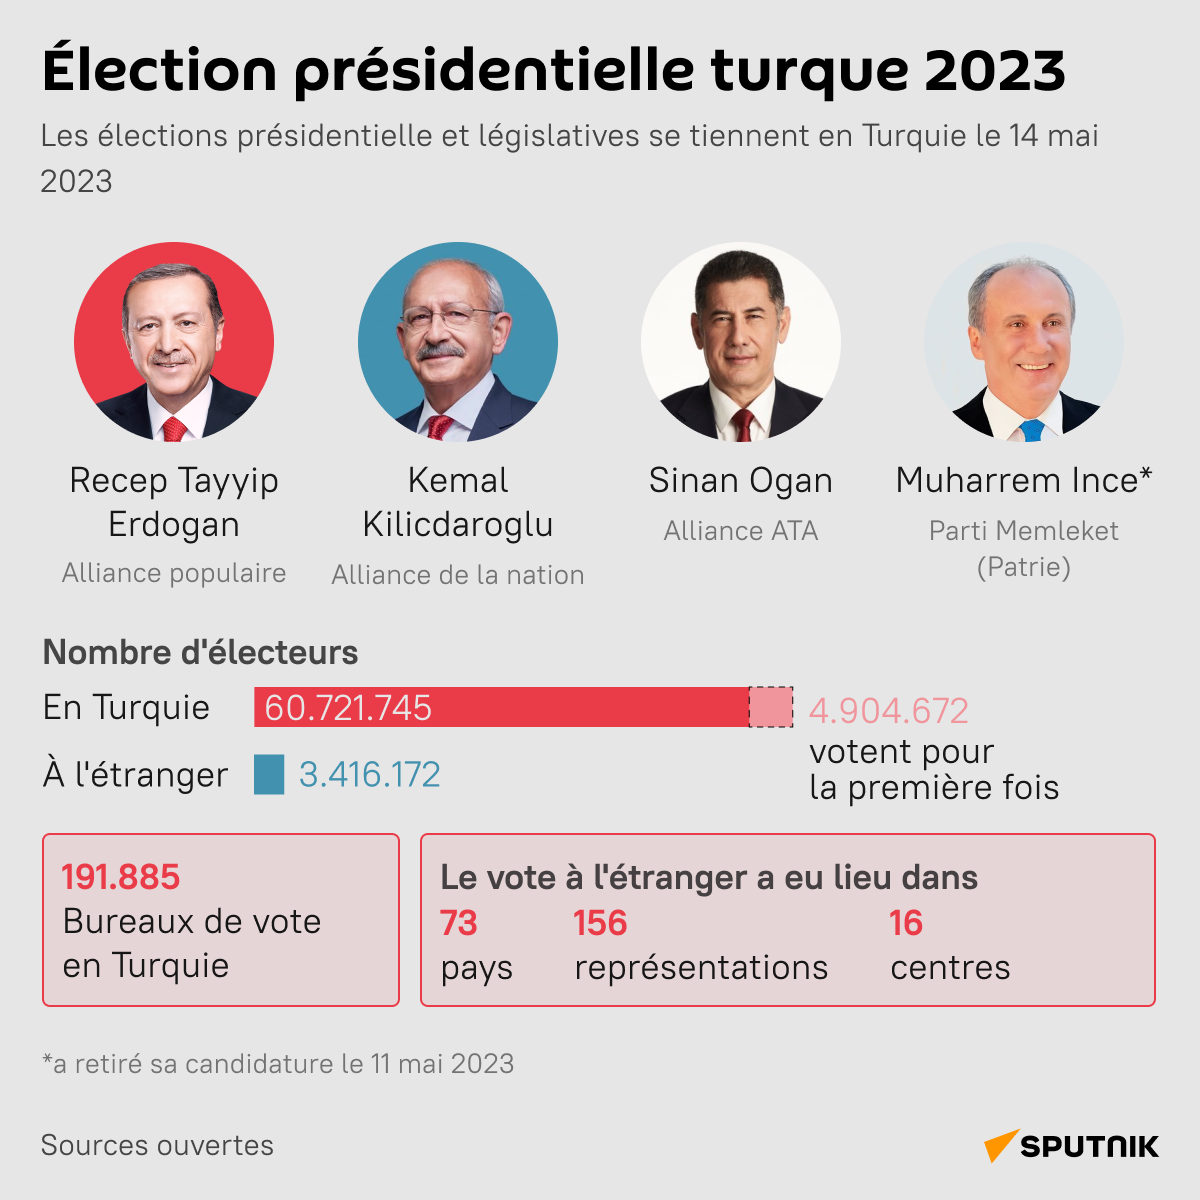 Présidentielle turque 2023 - Sputnik Afrique